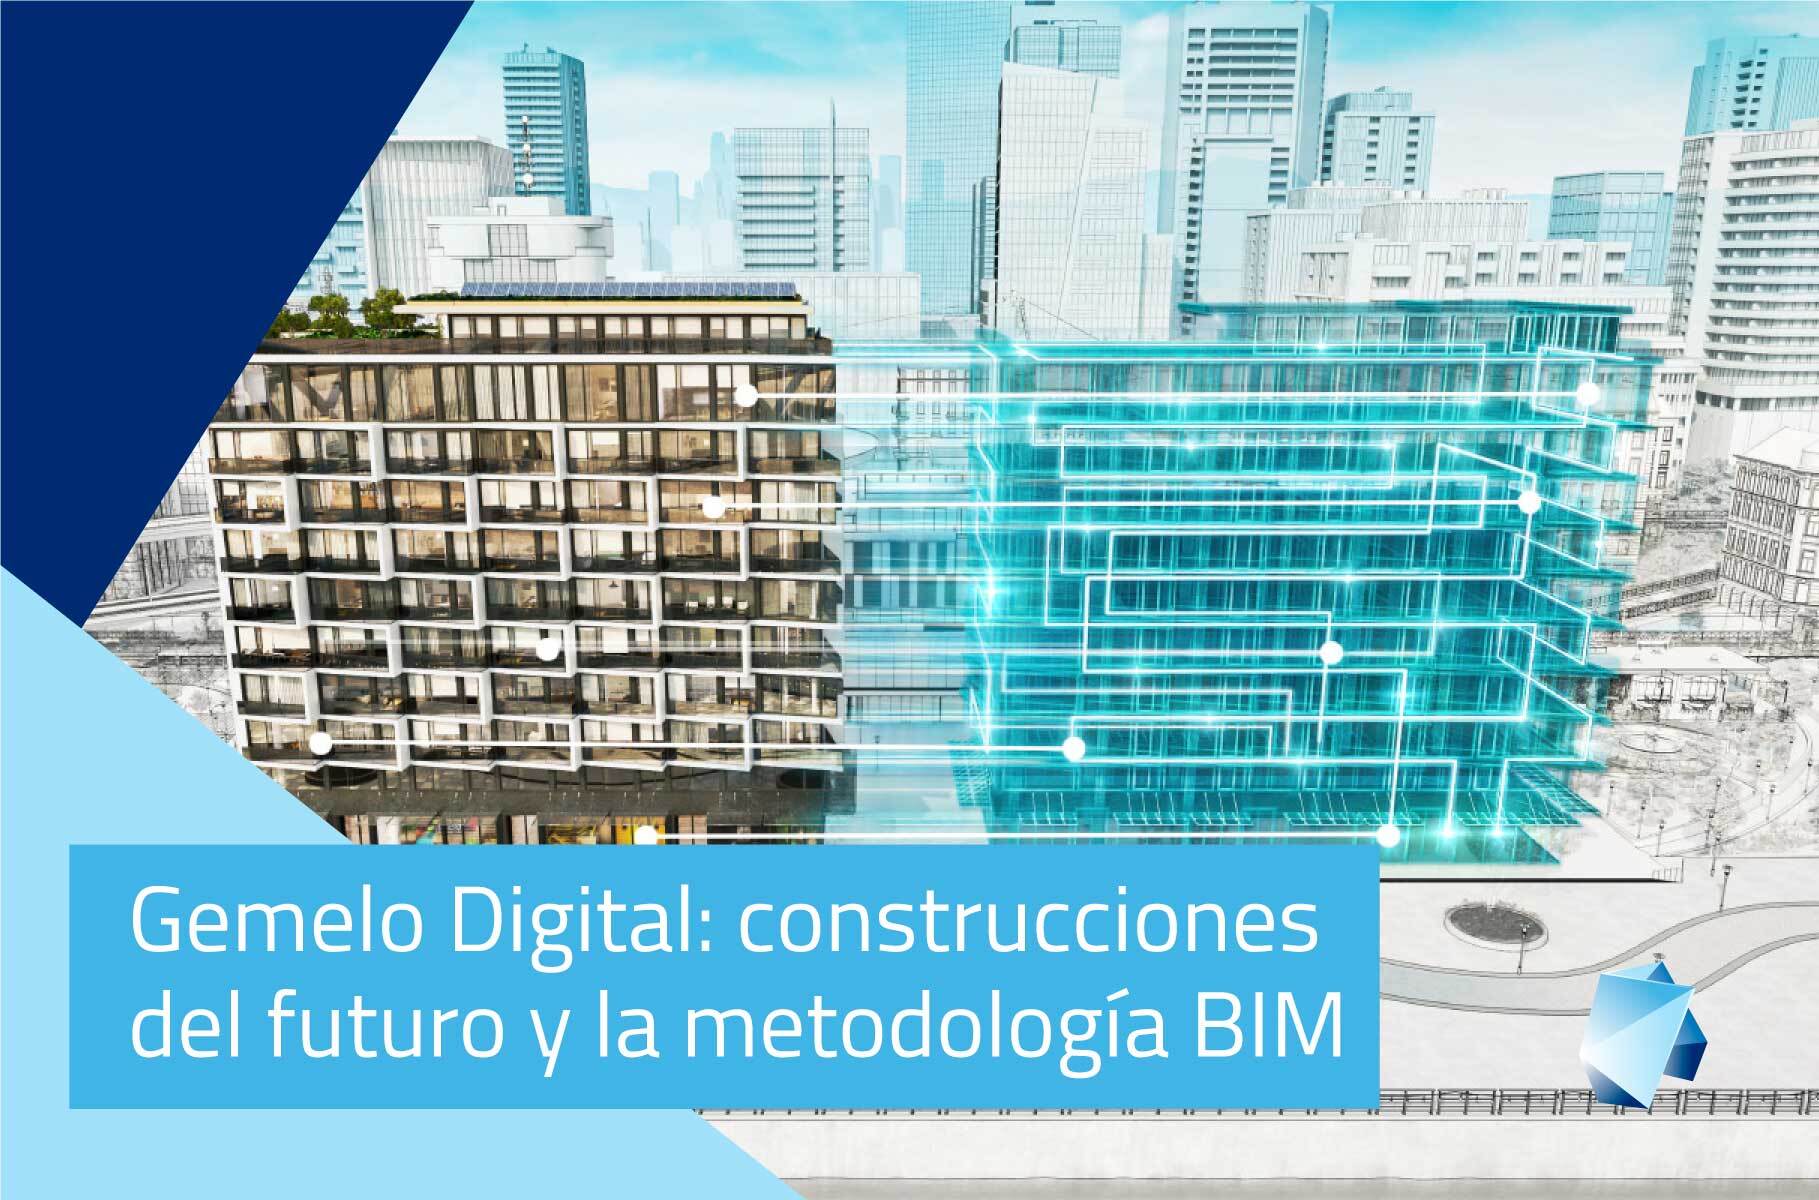 Gemelo digital: Las construcciones del futuro y la metodología BIM